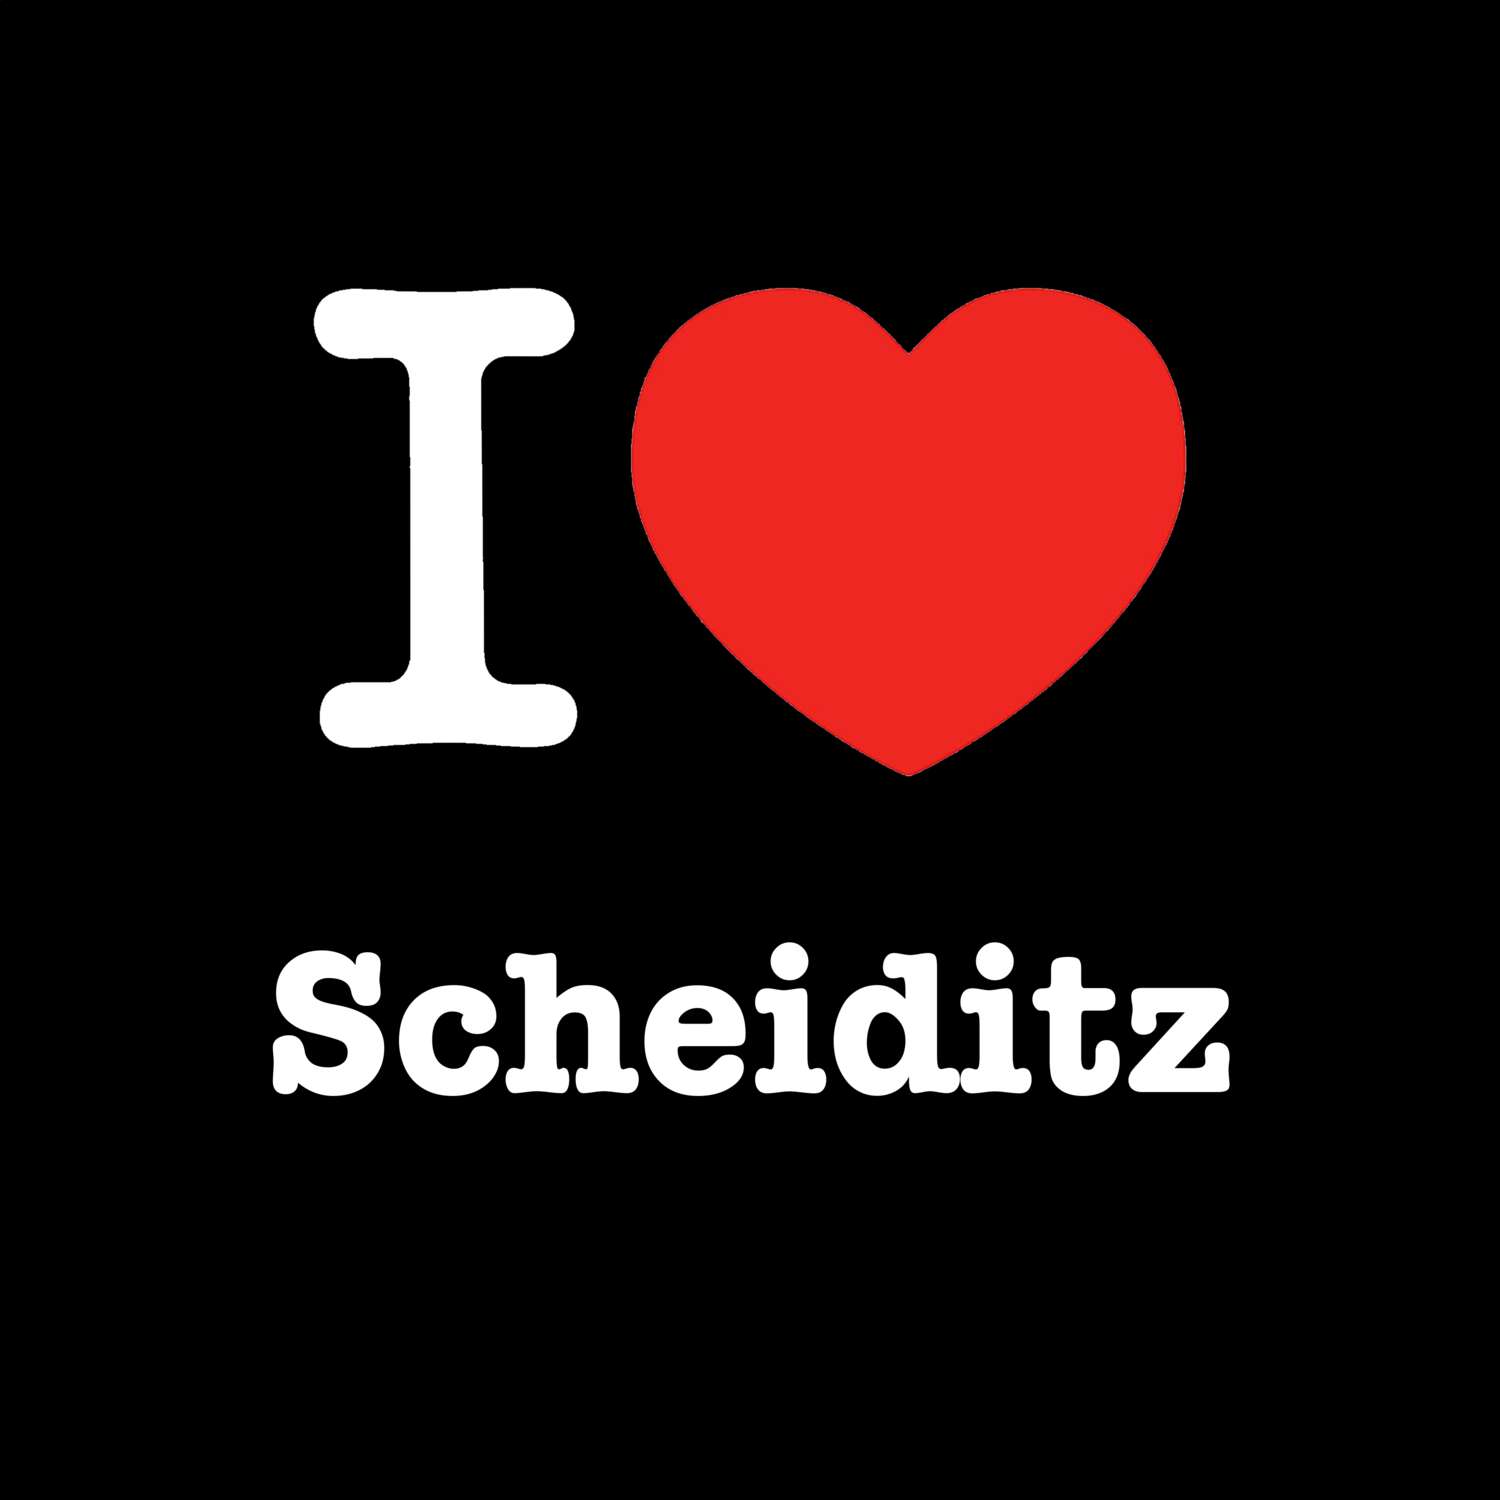 Scheiditz T-Shirt »I love«